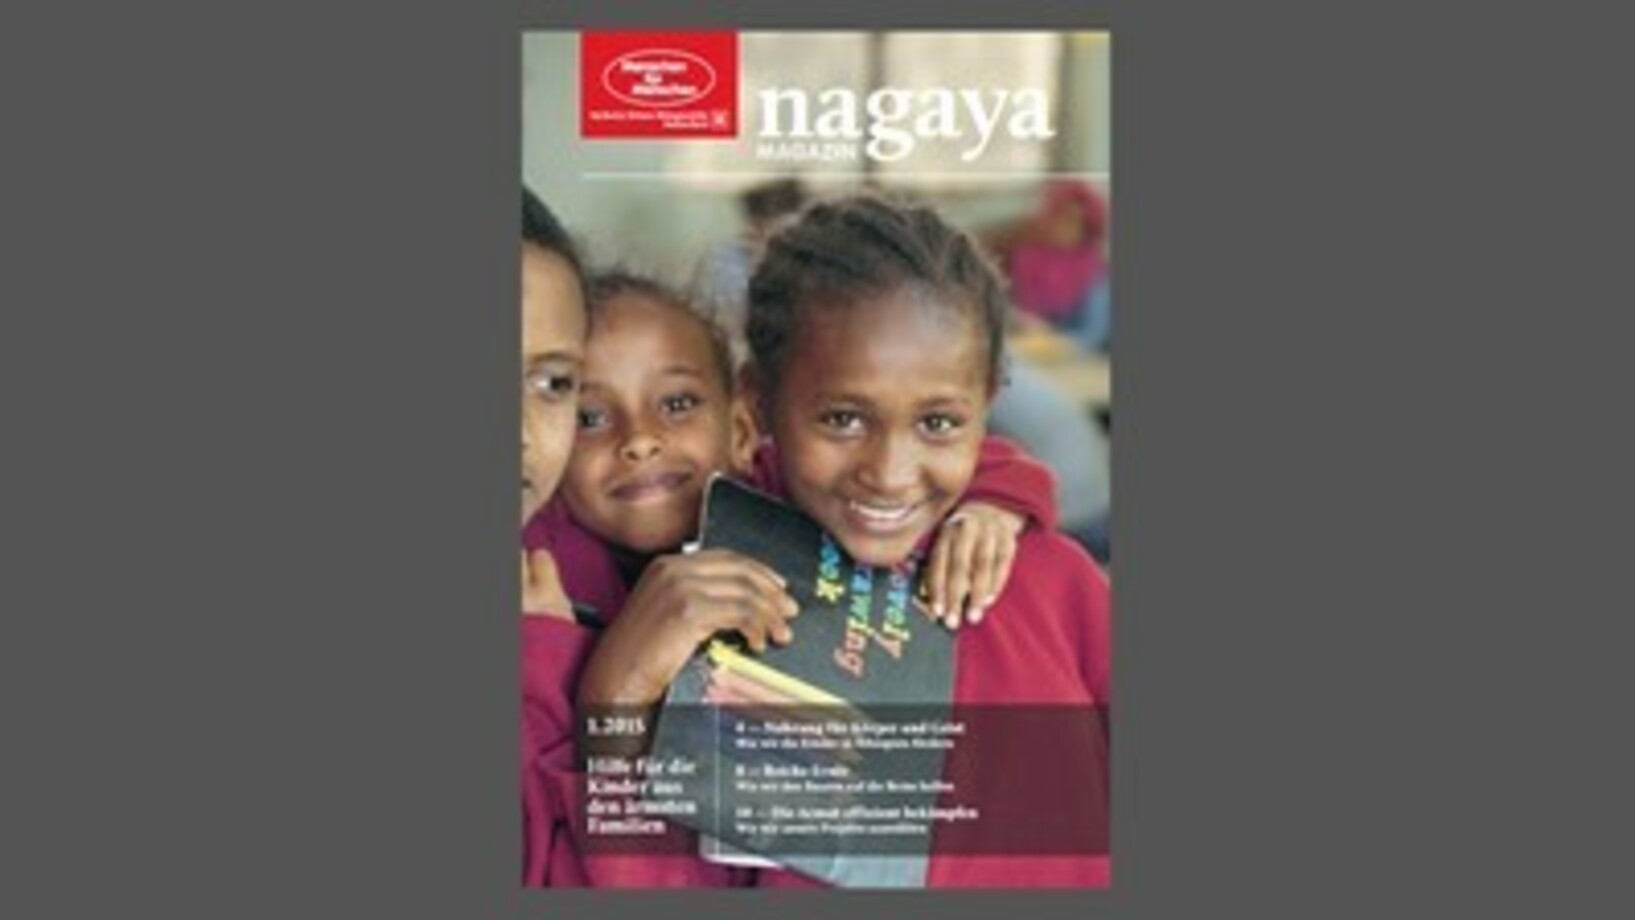 Vorschaubild Nagaya Magazin 1.2015